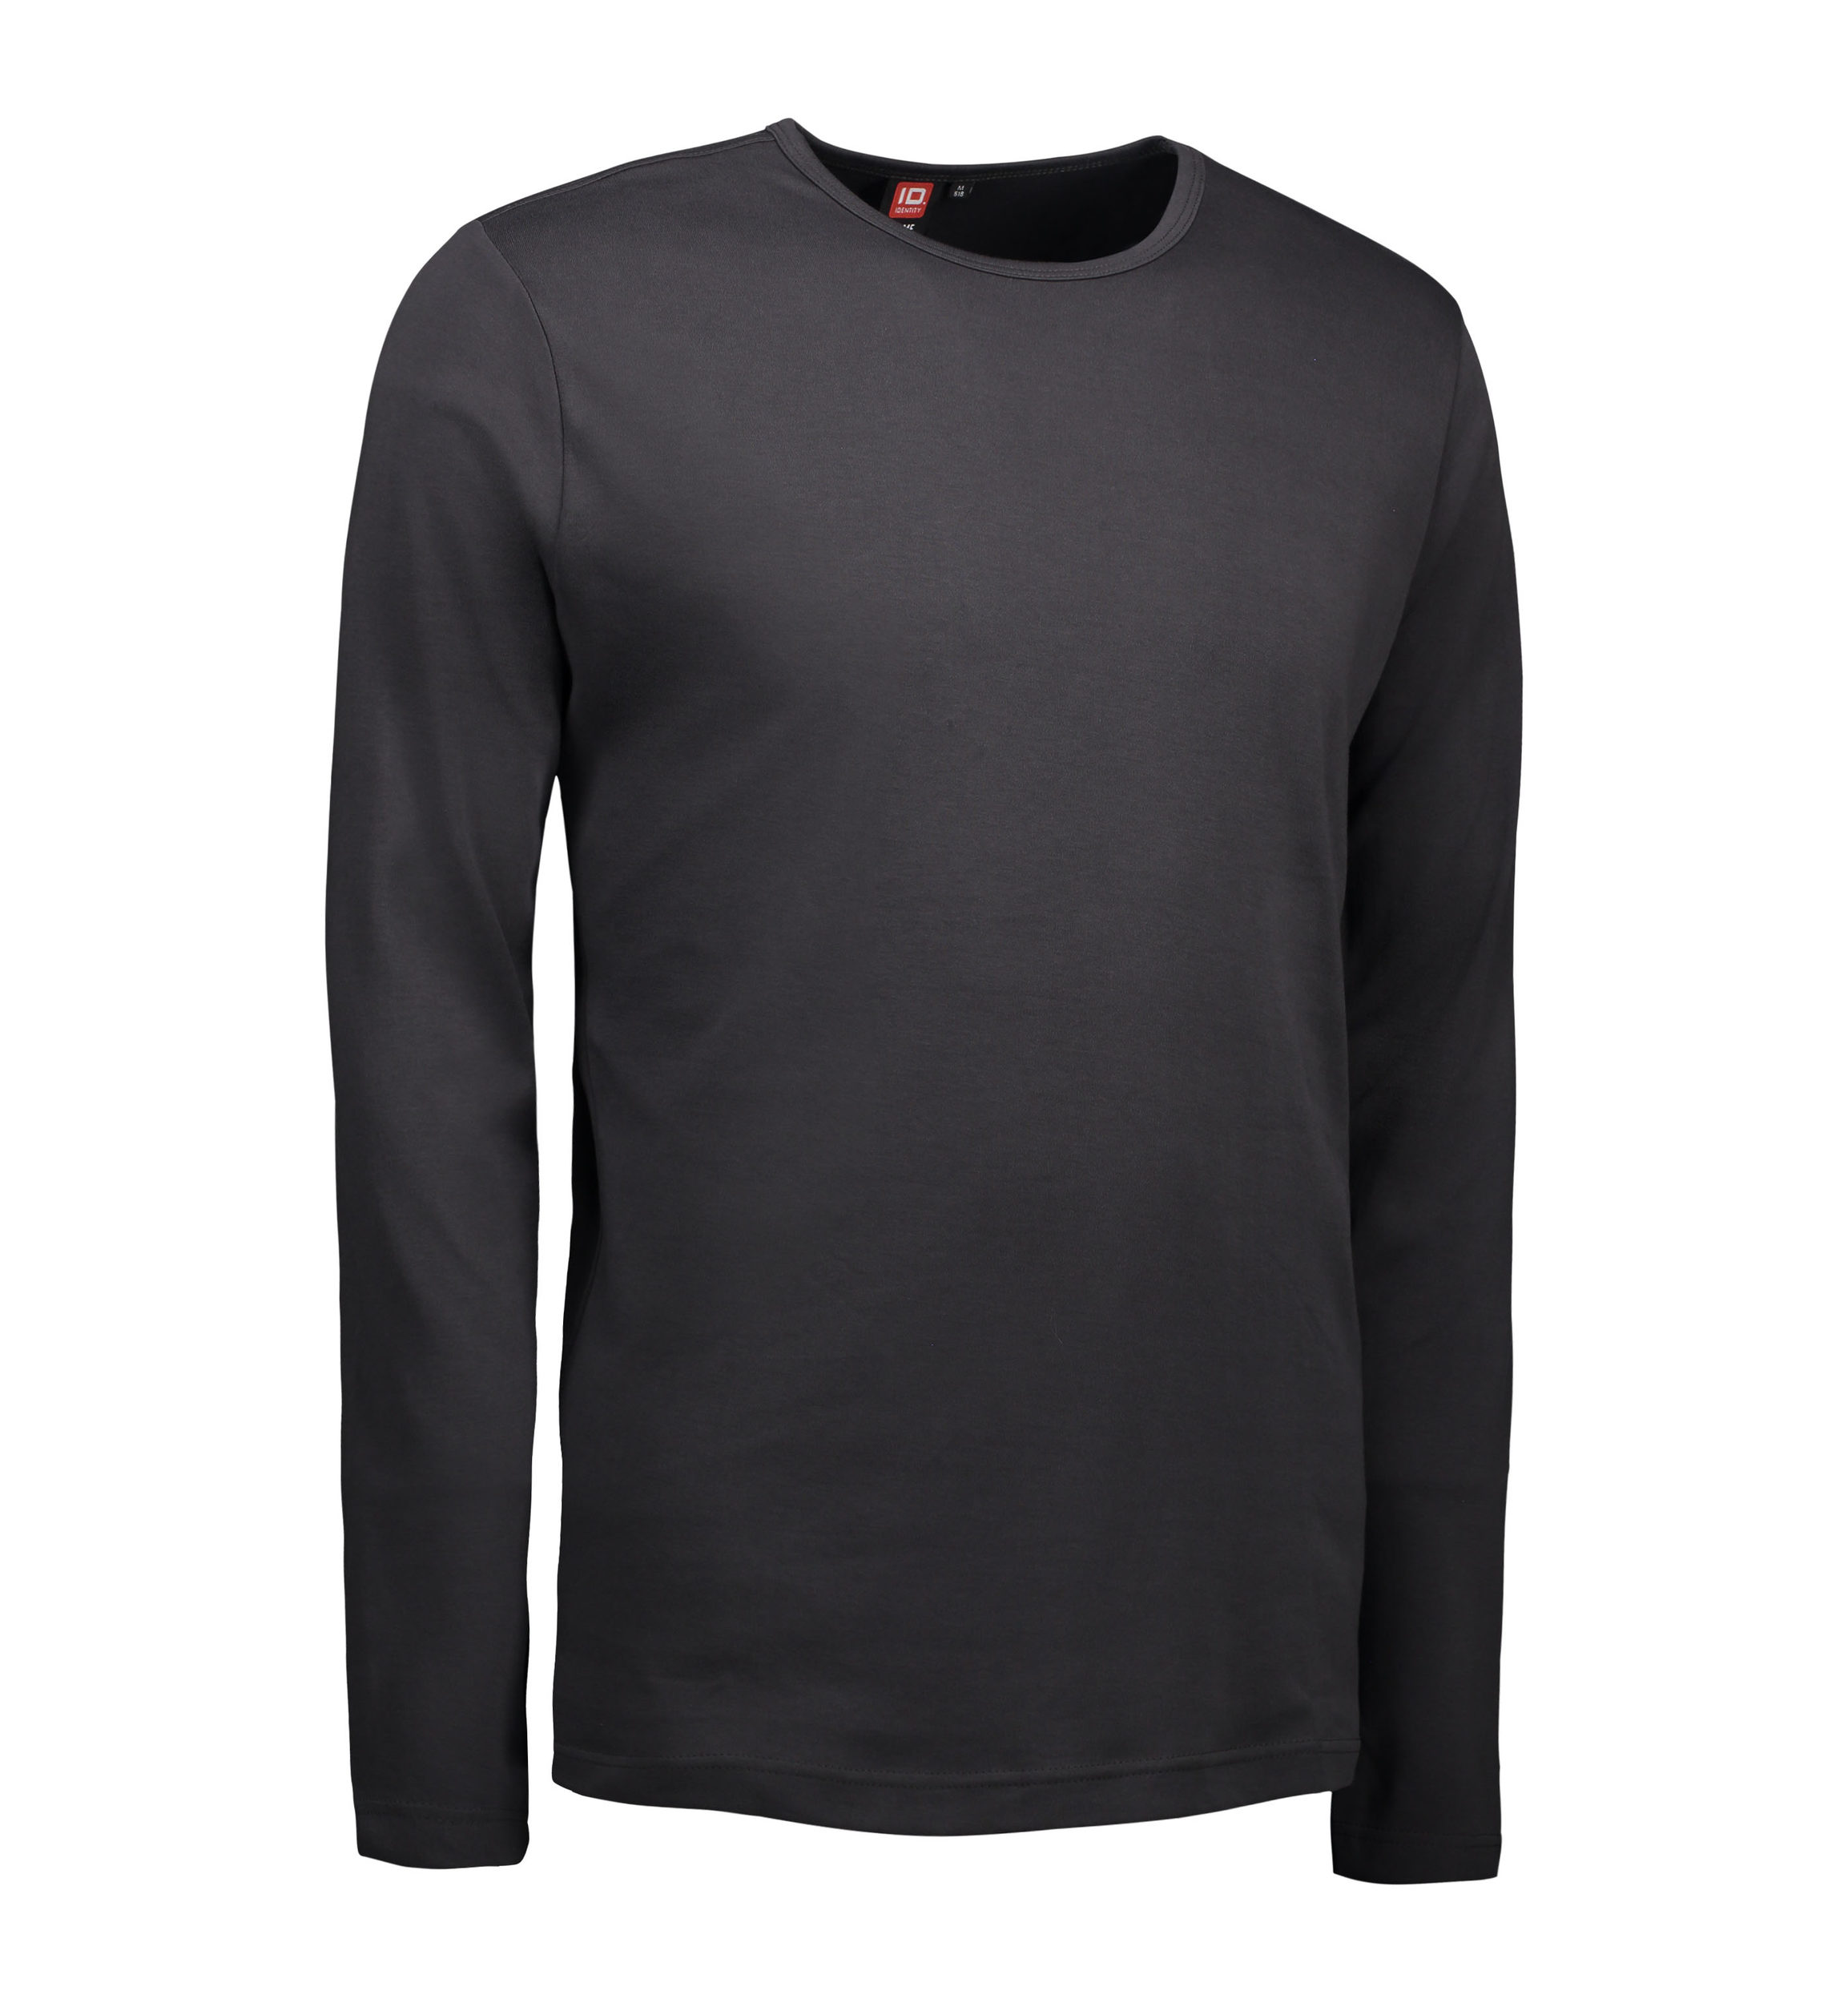 7: Koks grå langærmet t-shirt til mænd - 3XL